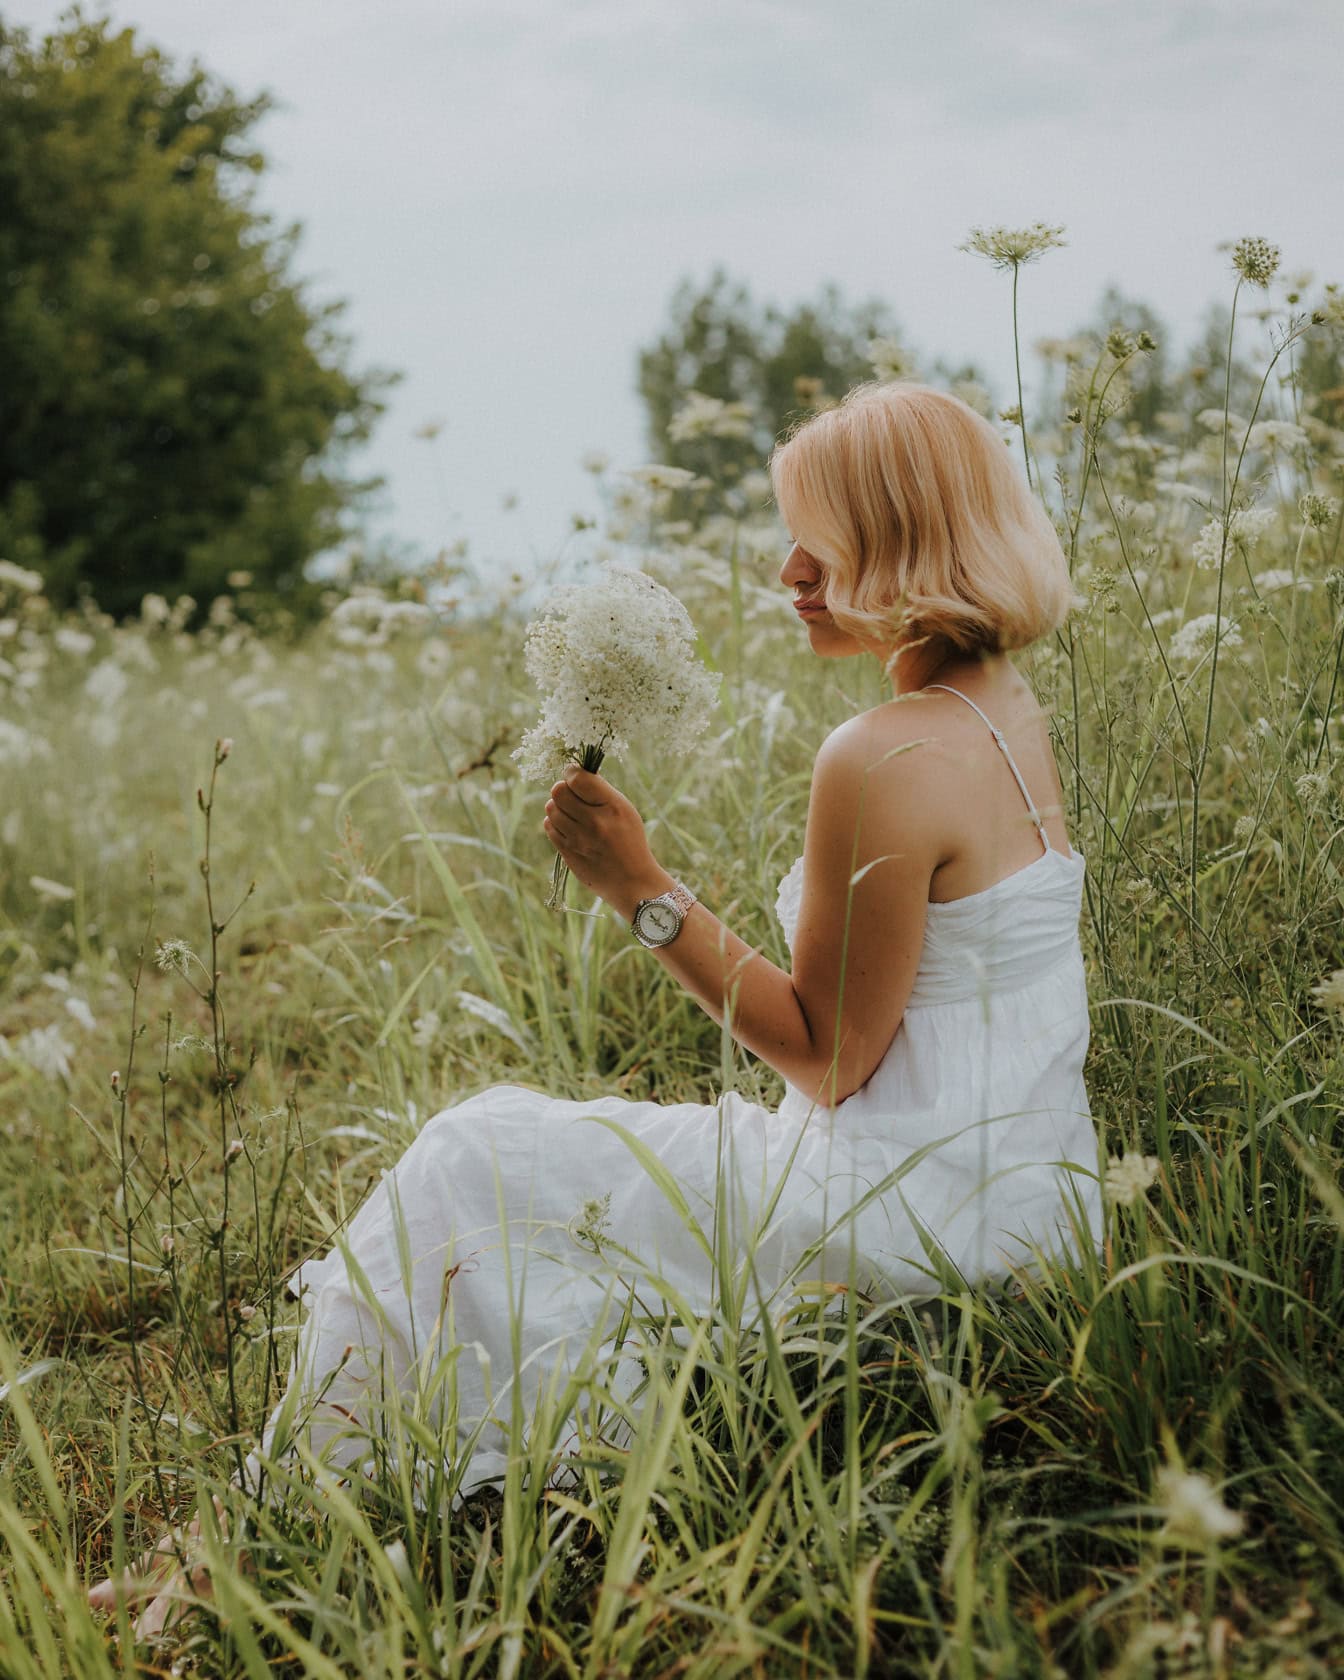 Pengantin pirang tampan dengan gaun pengantin gaya country duduk di padang rumput dan memetik bunga liar putih